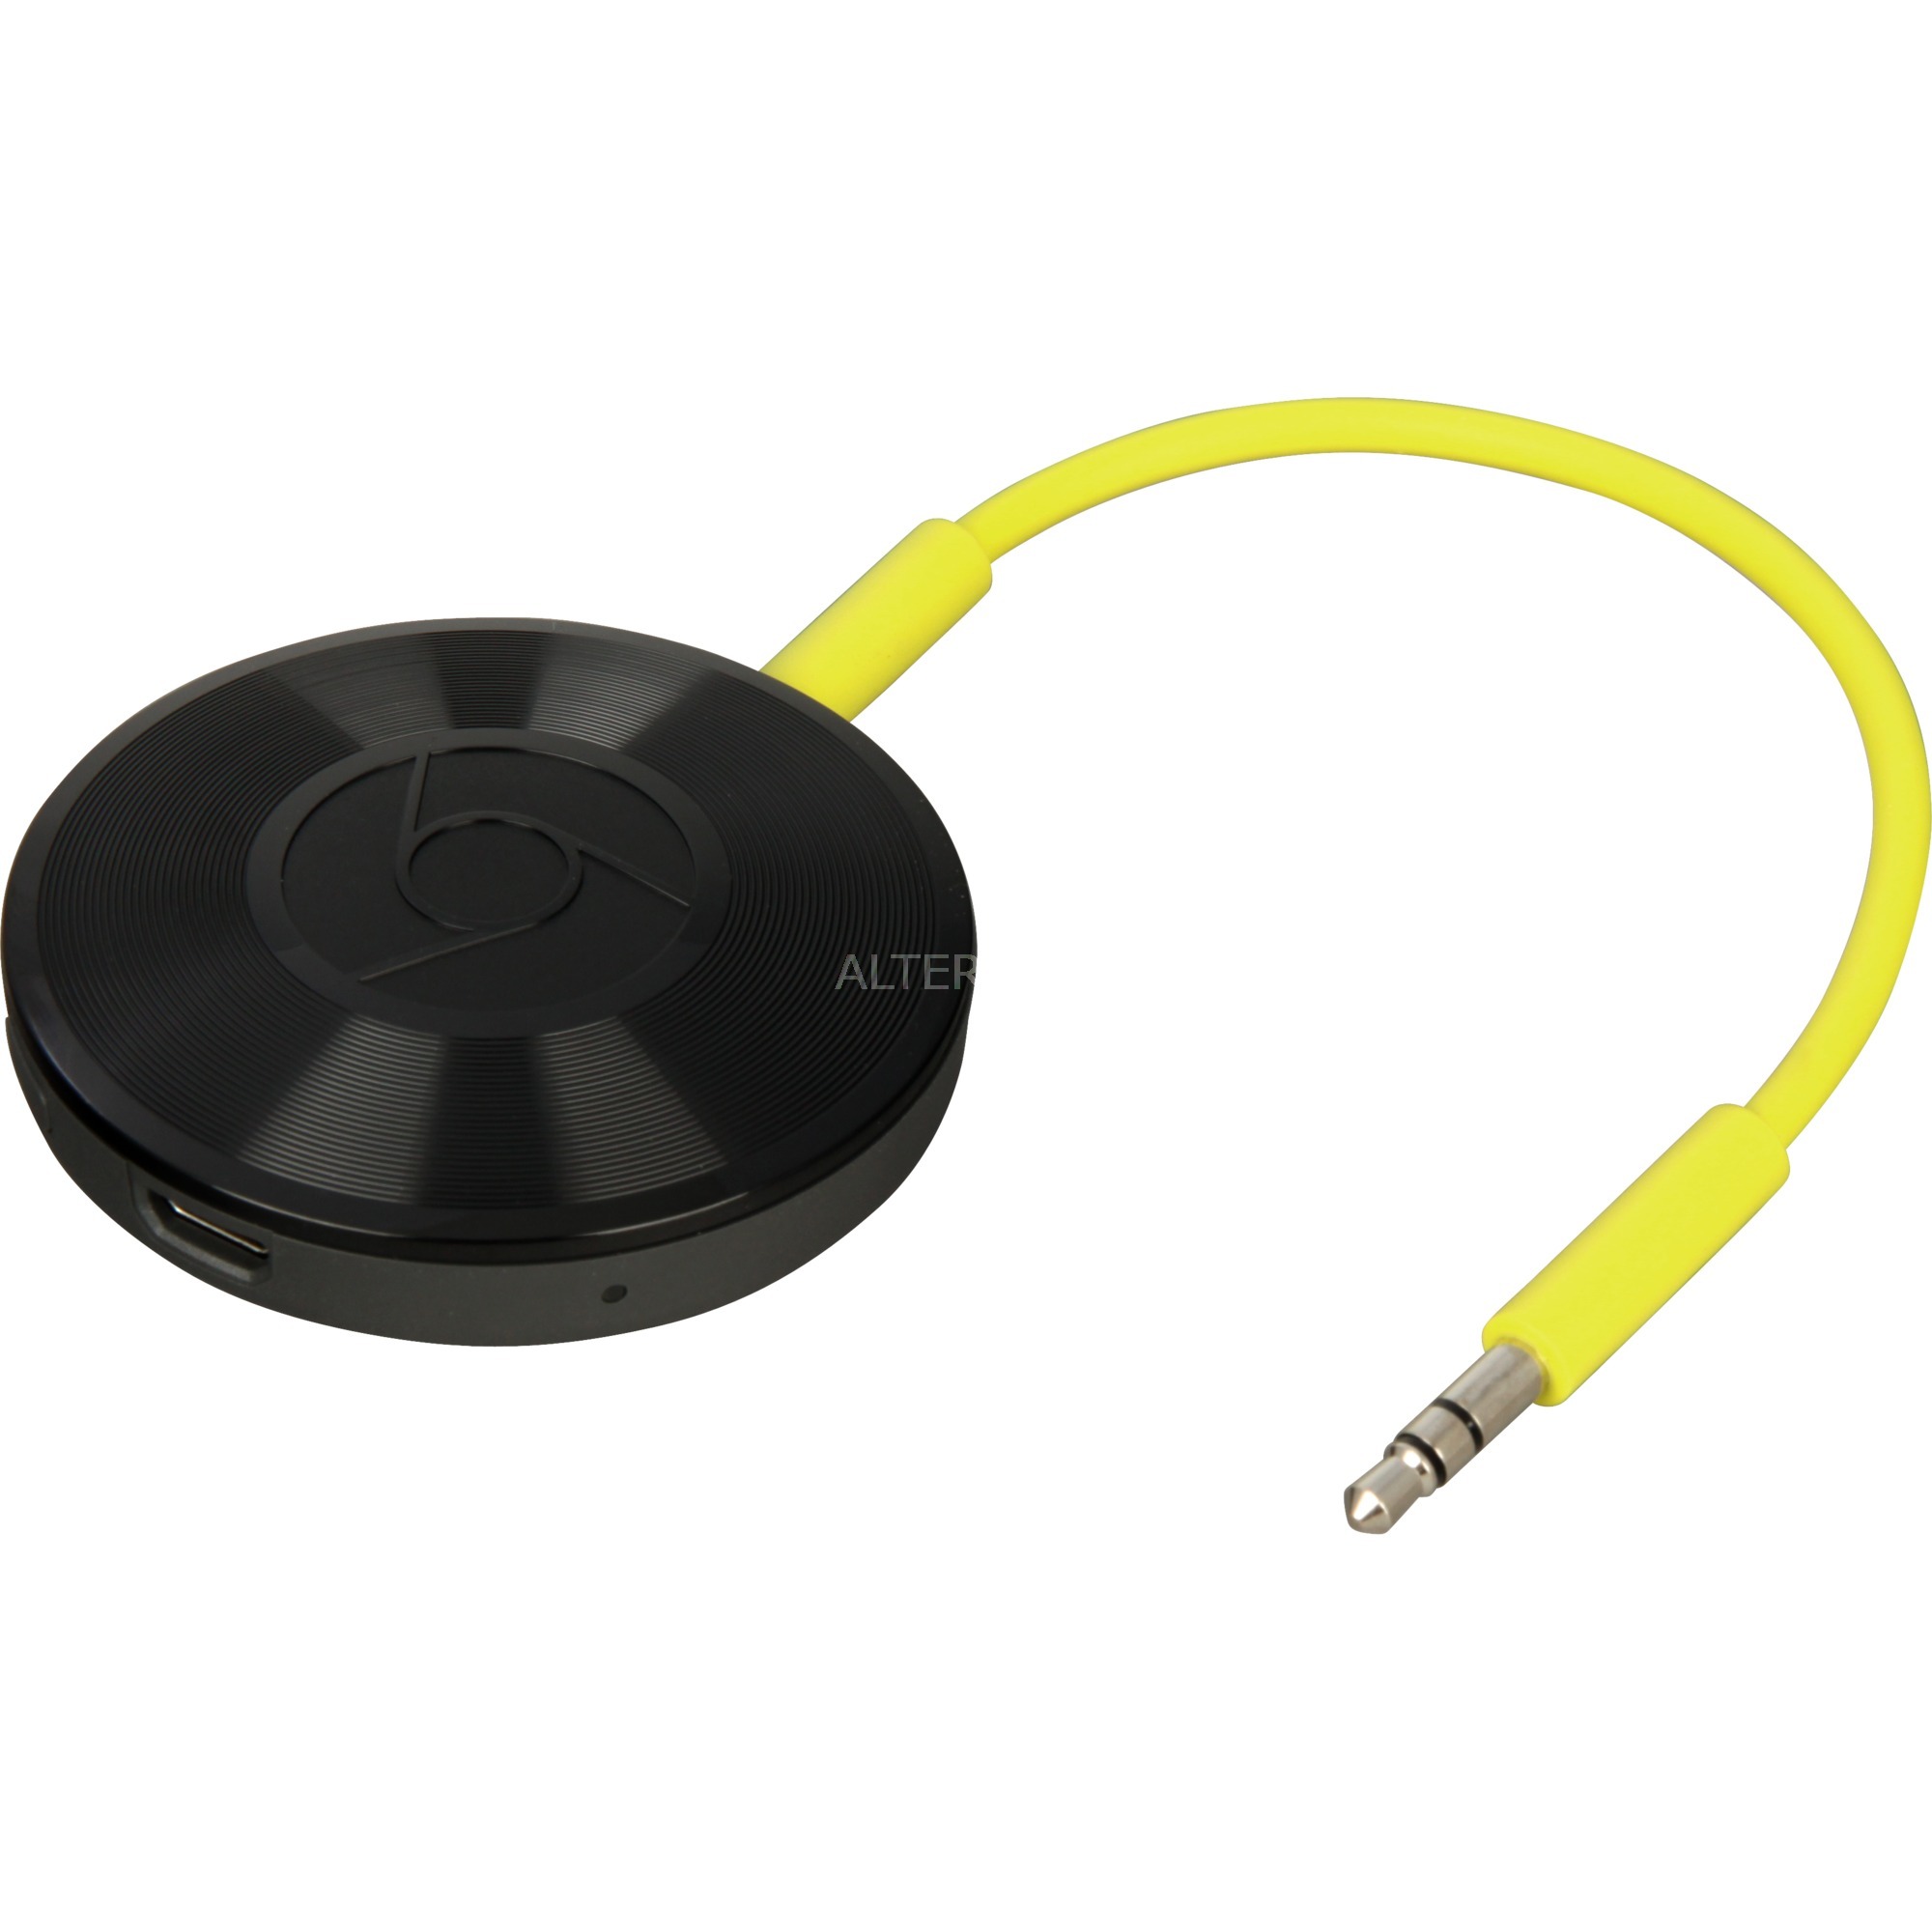 Chromecast Audio system strumieniowania multimediów Czarny Wi-Fi, Streaming client